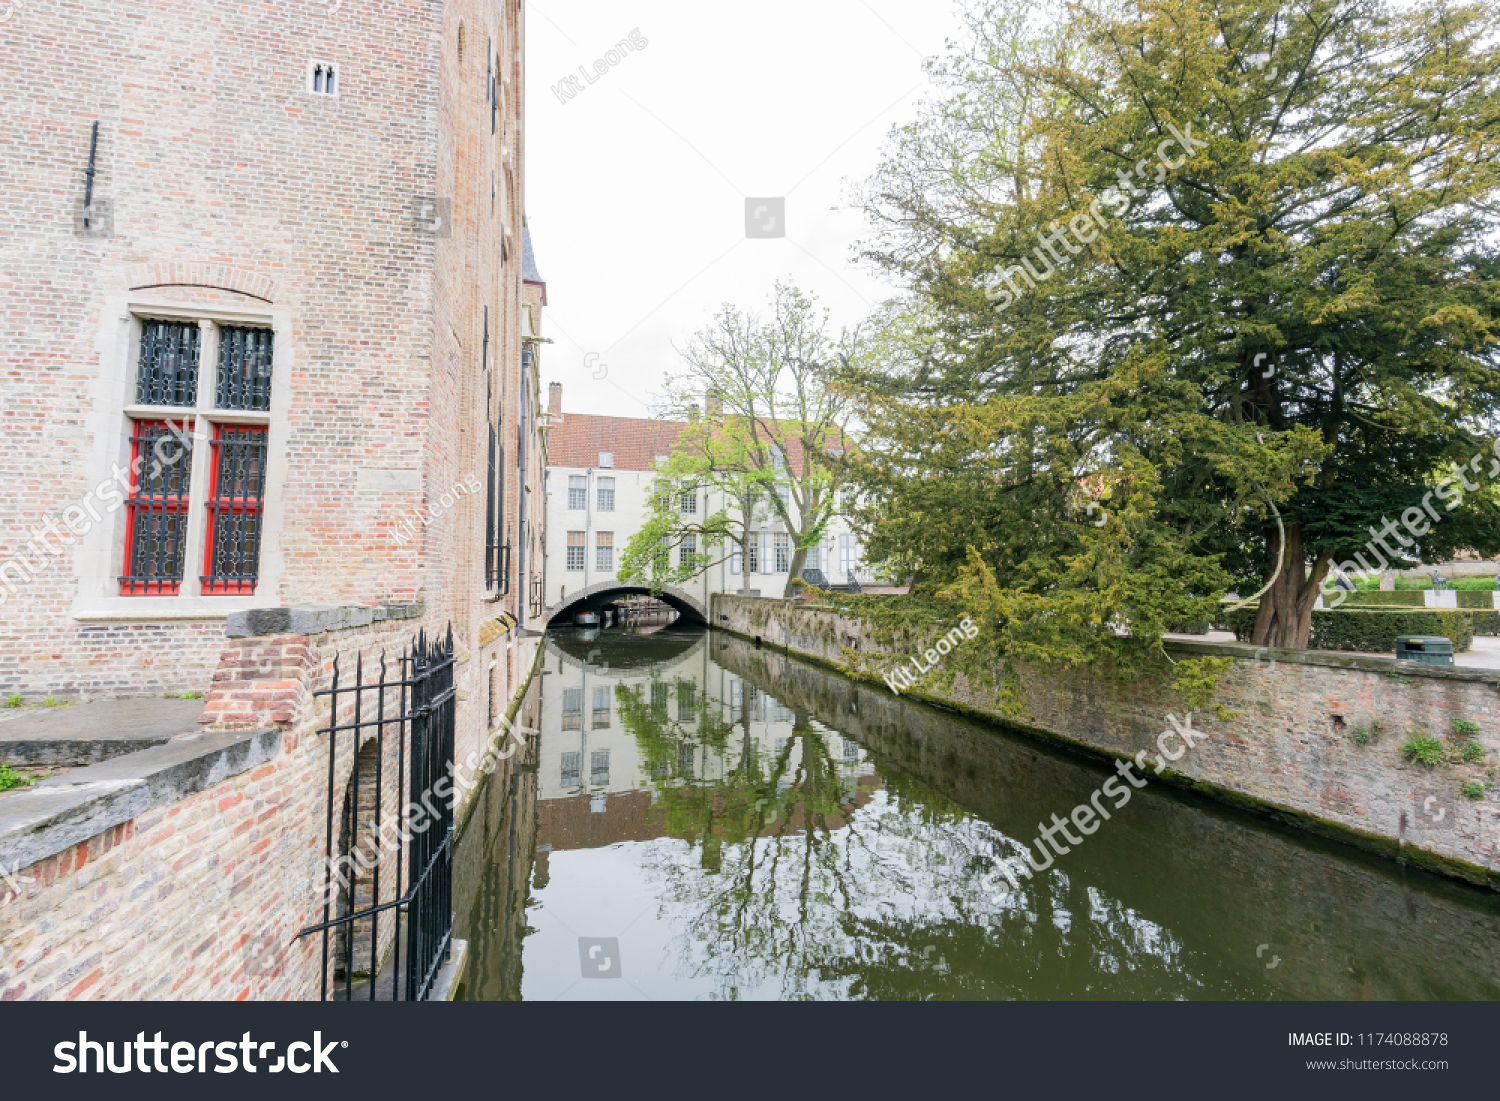 Beautiful landscape around Bonifacius Bridge at Brugge, Belgium #1174088878